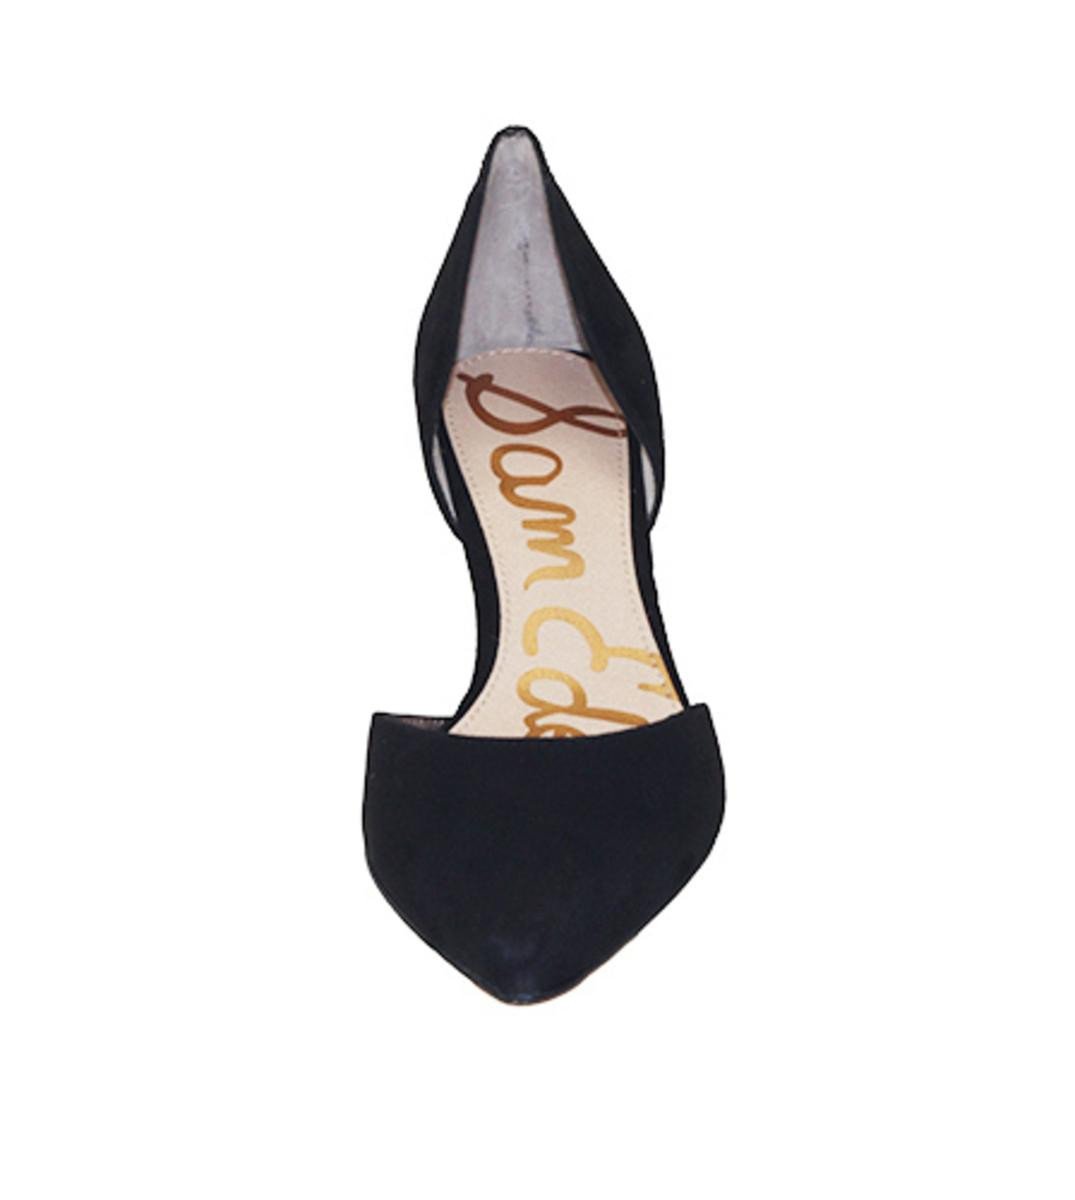 Sam Edelman for Women: Opal Black Suede Heel